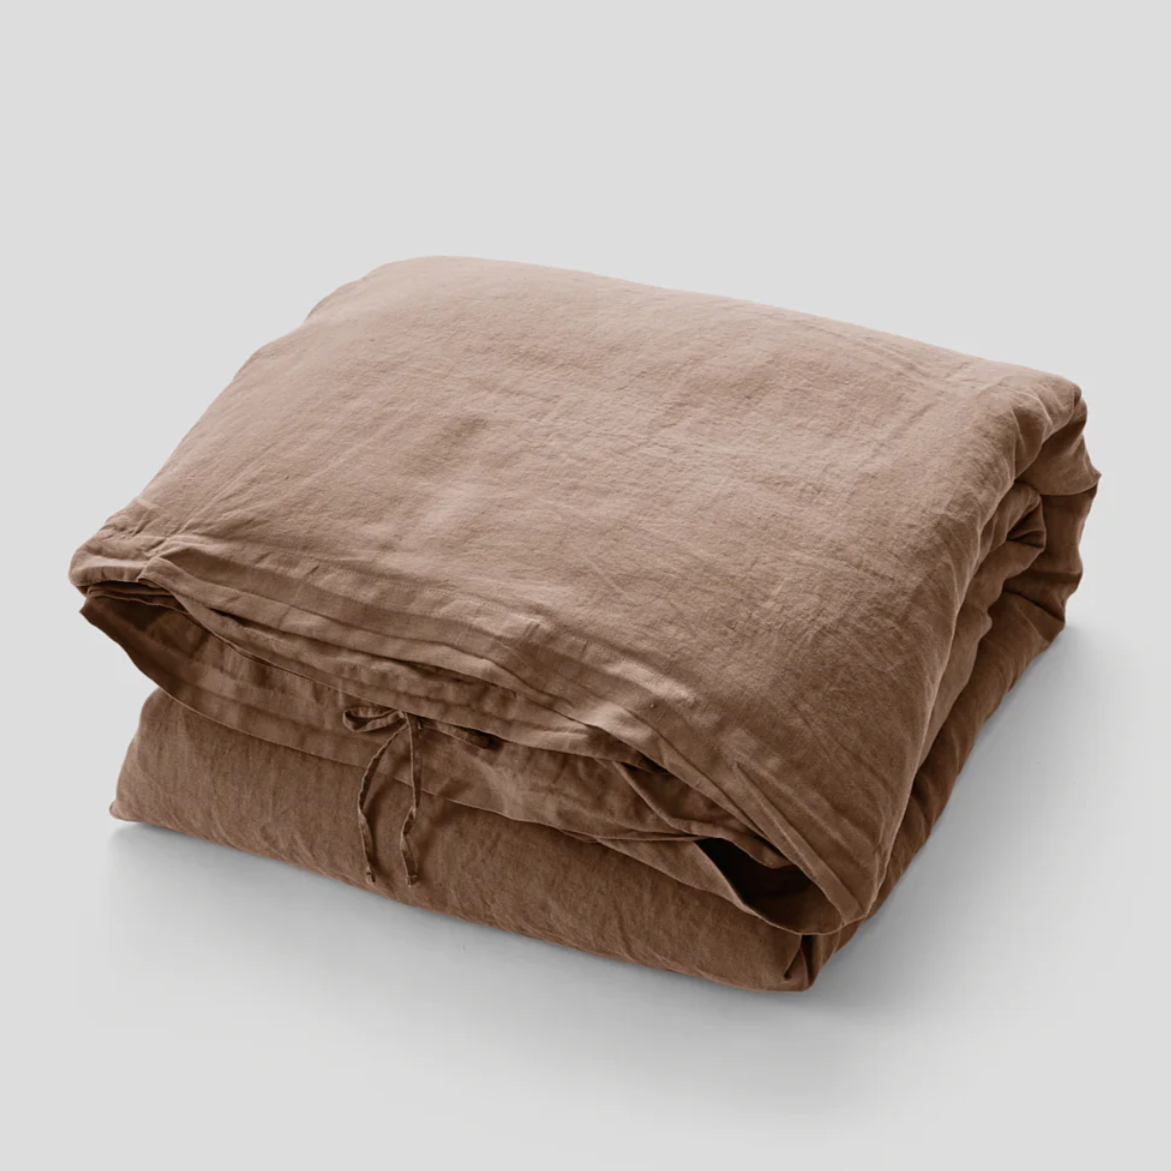 100% Linen Duvet Cover in Chestnut